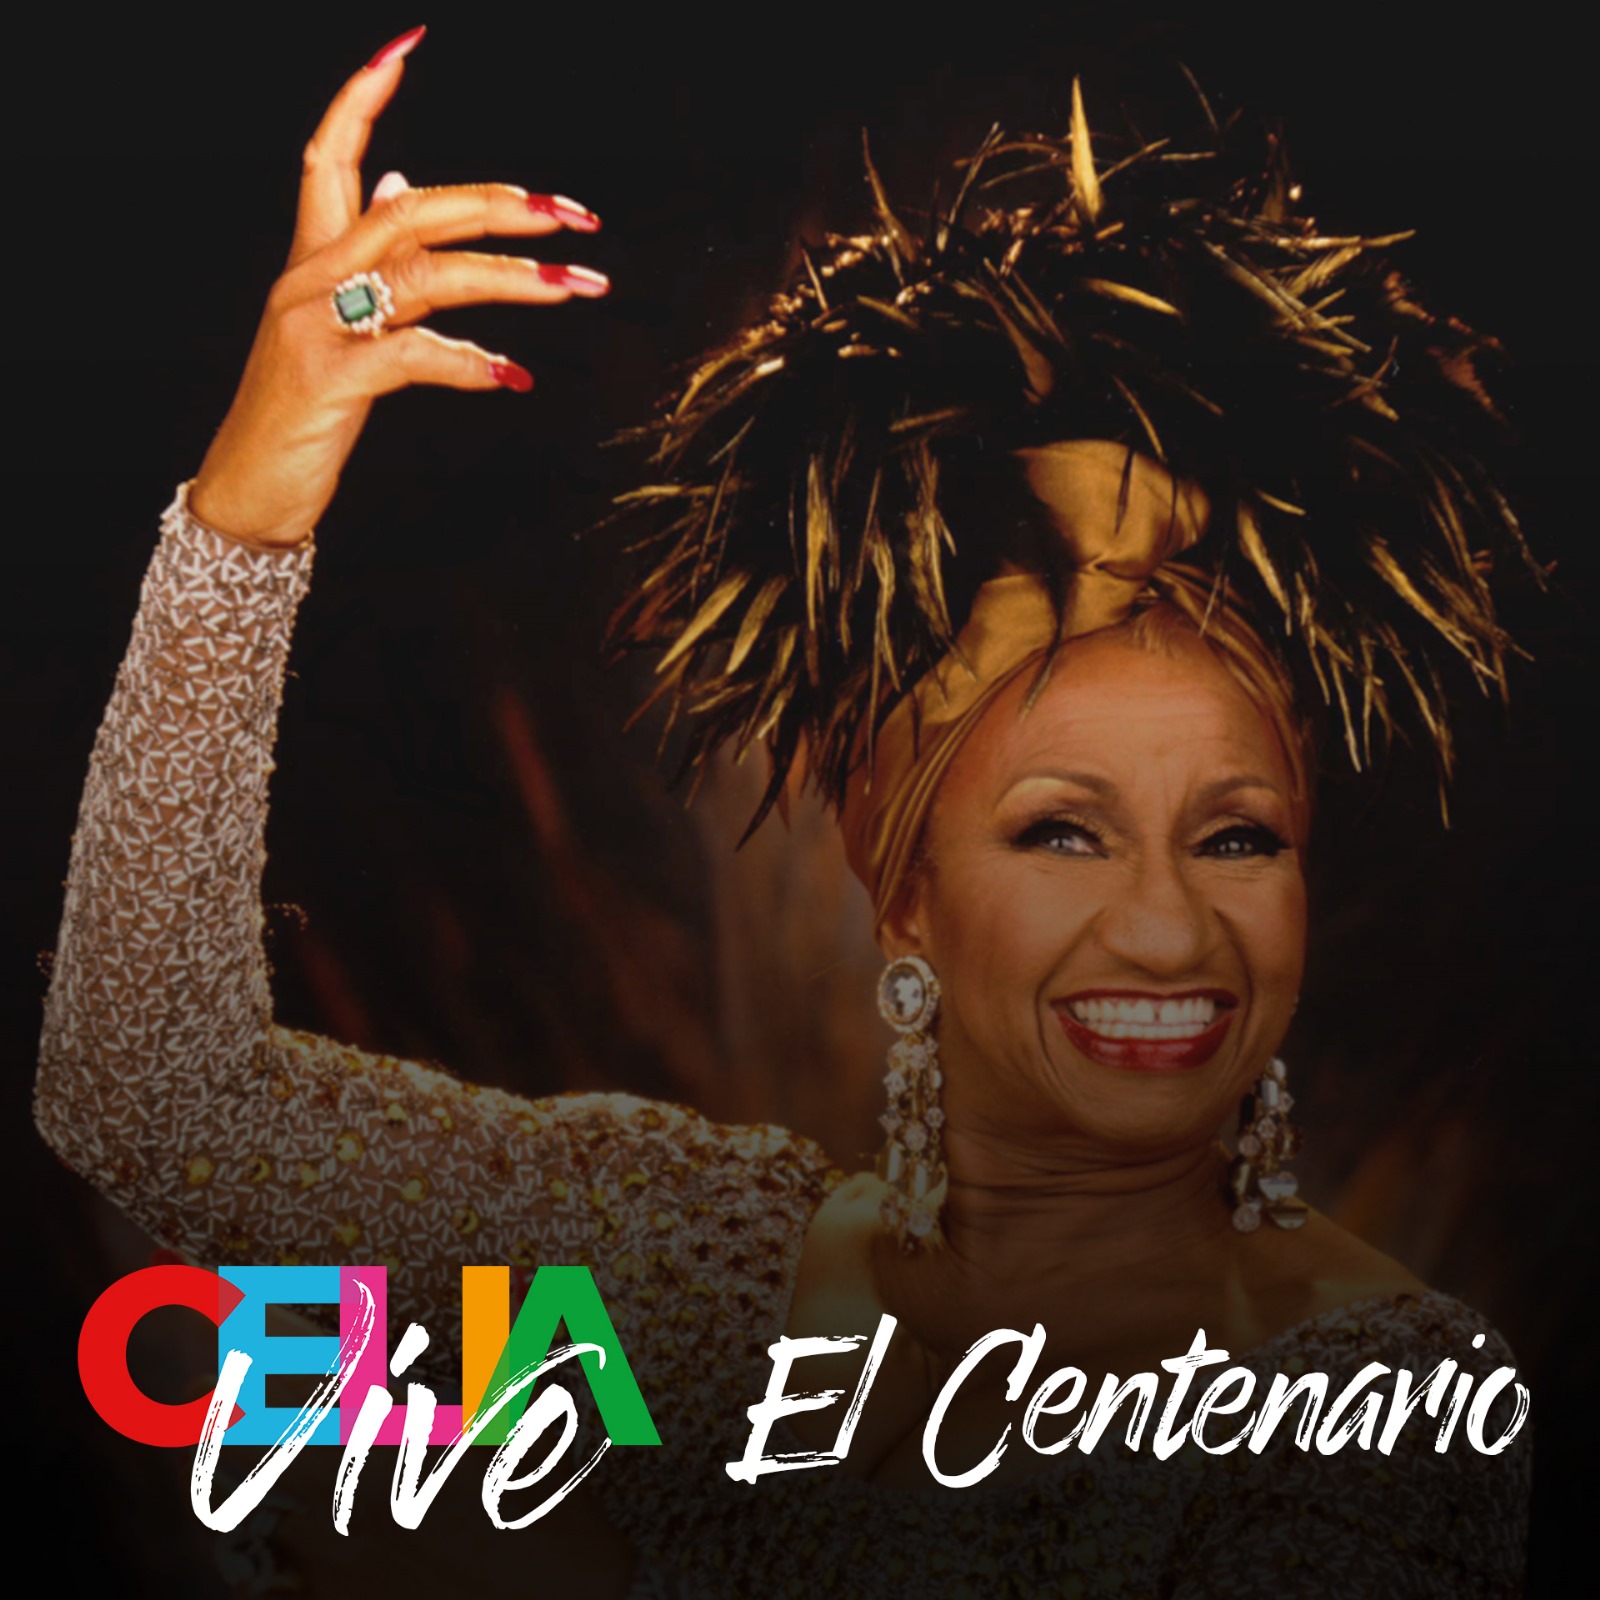 Celia Vive Centenario